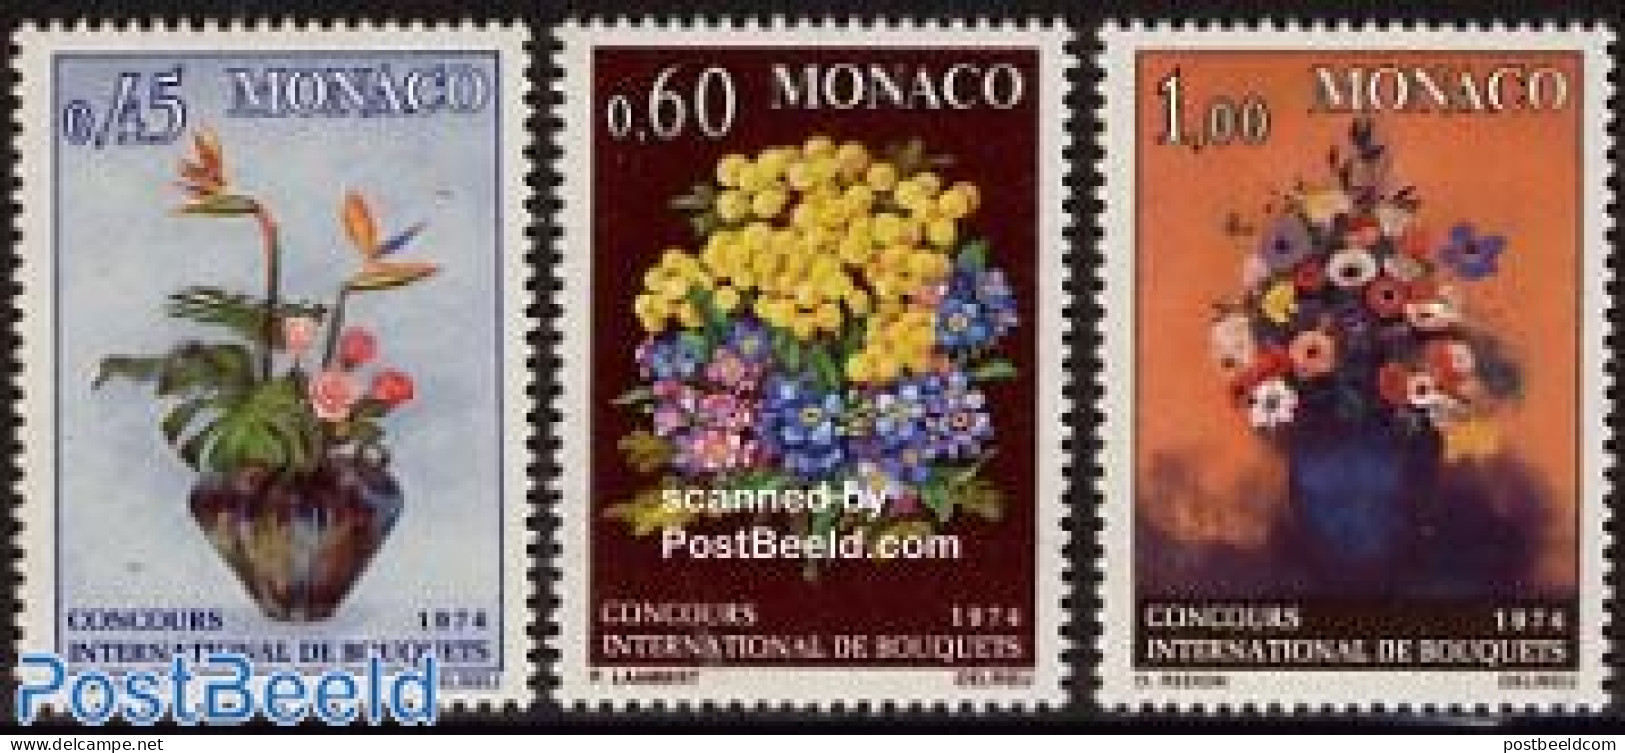 Monaco 1973 Flower Arranging Concours 3v, Mint NH, Nature - Flowers & Plants - Neufs